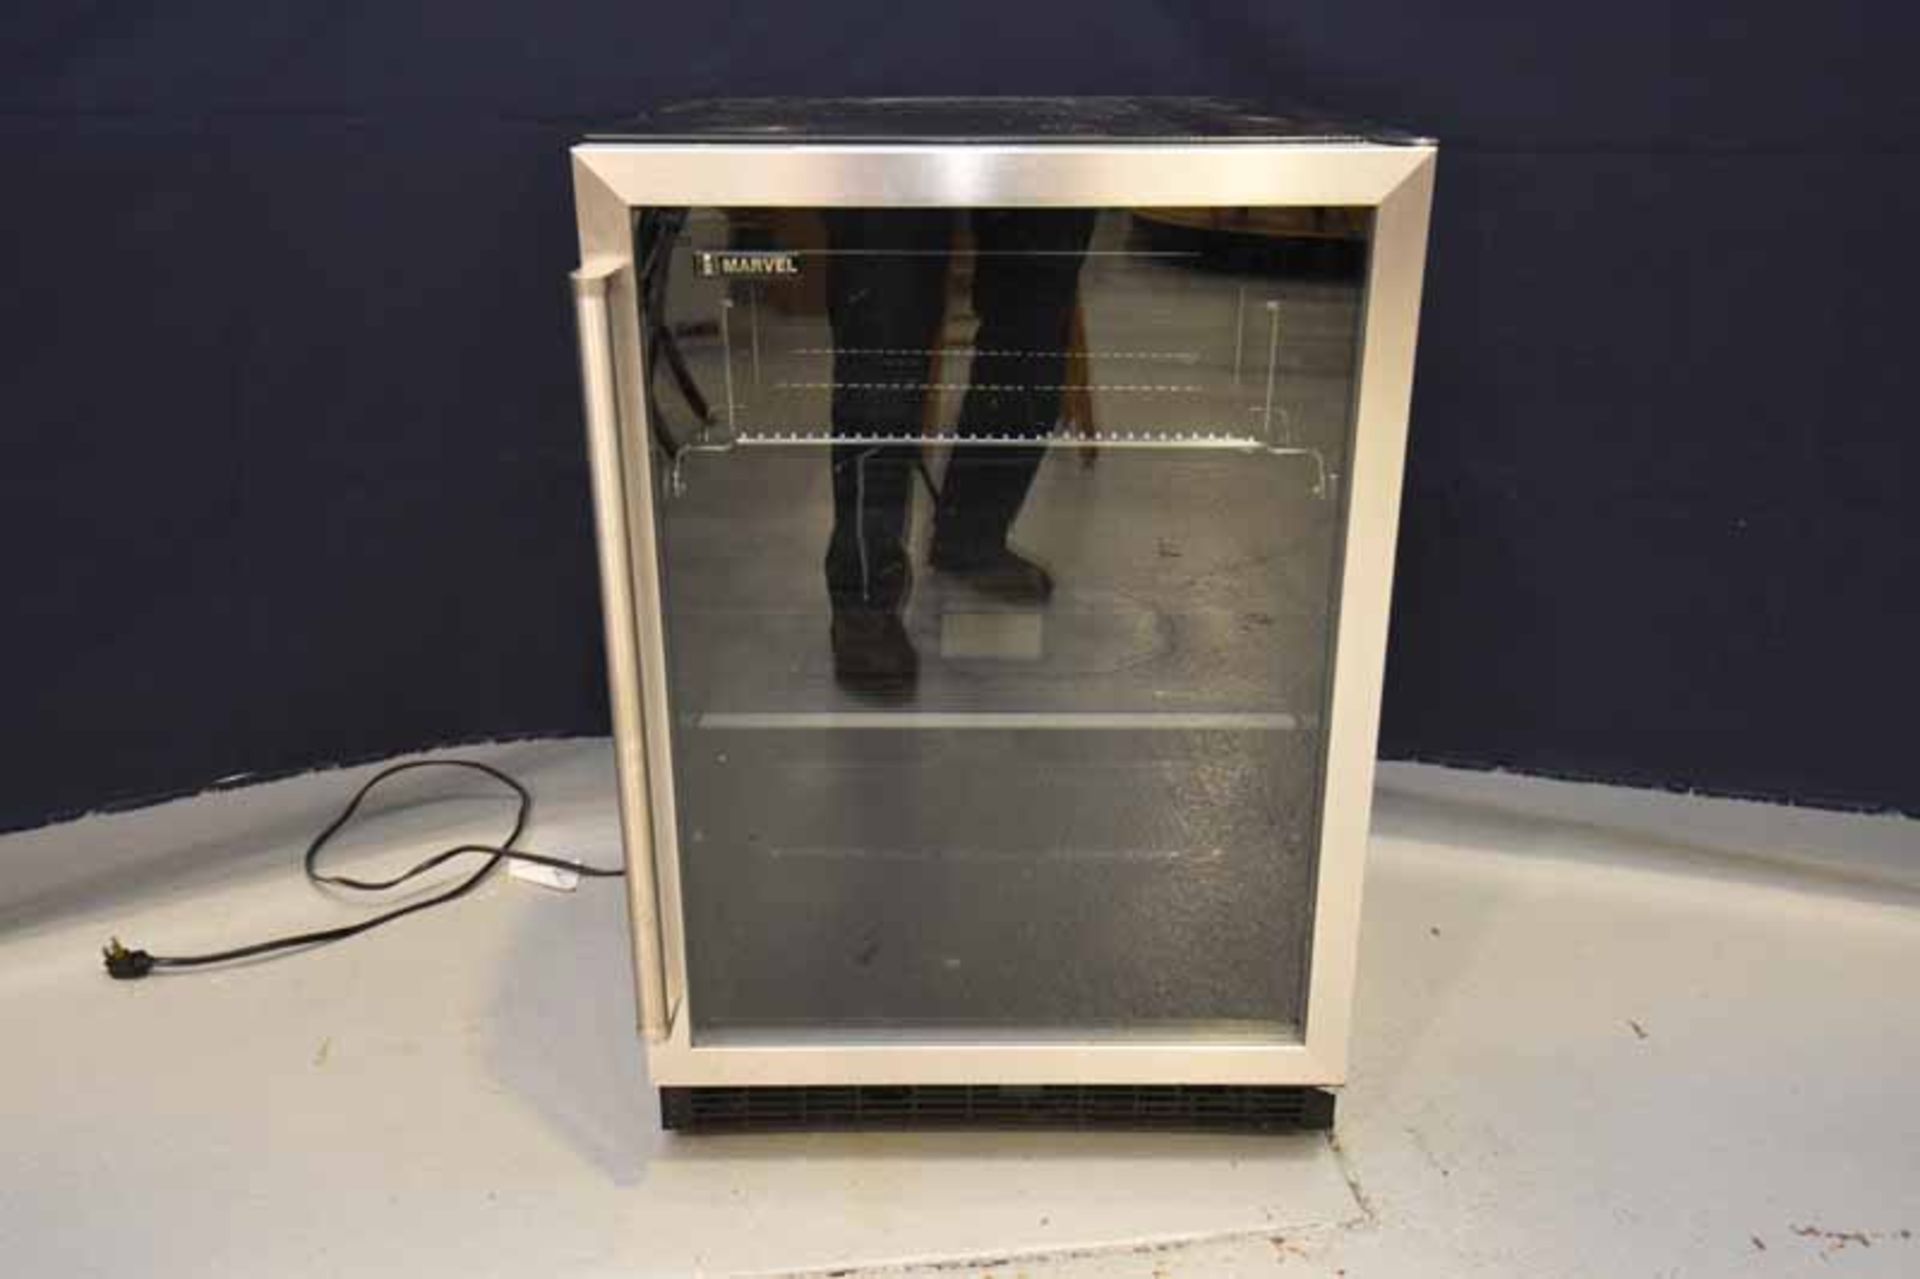 1 - Summit commercial small fridge (22" L x 23" W x 33" H)